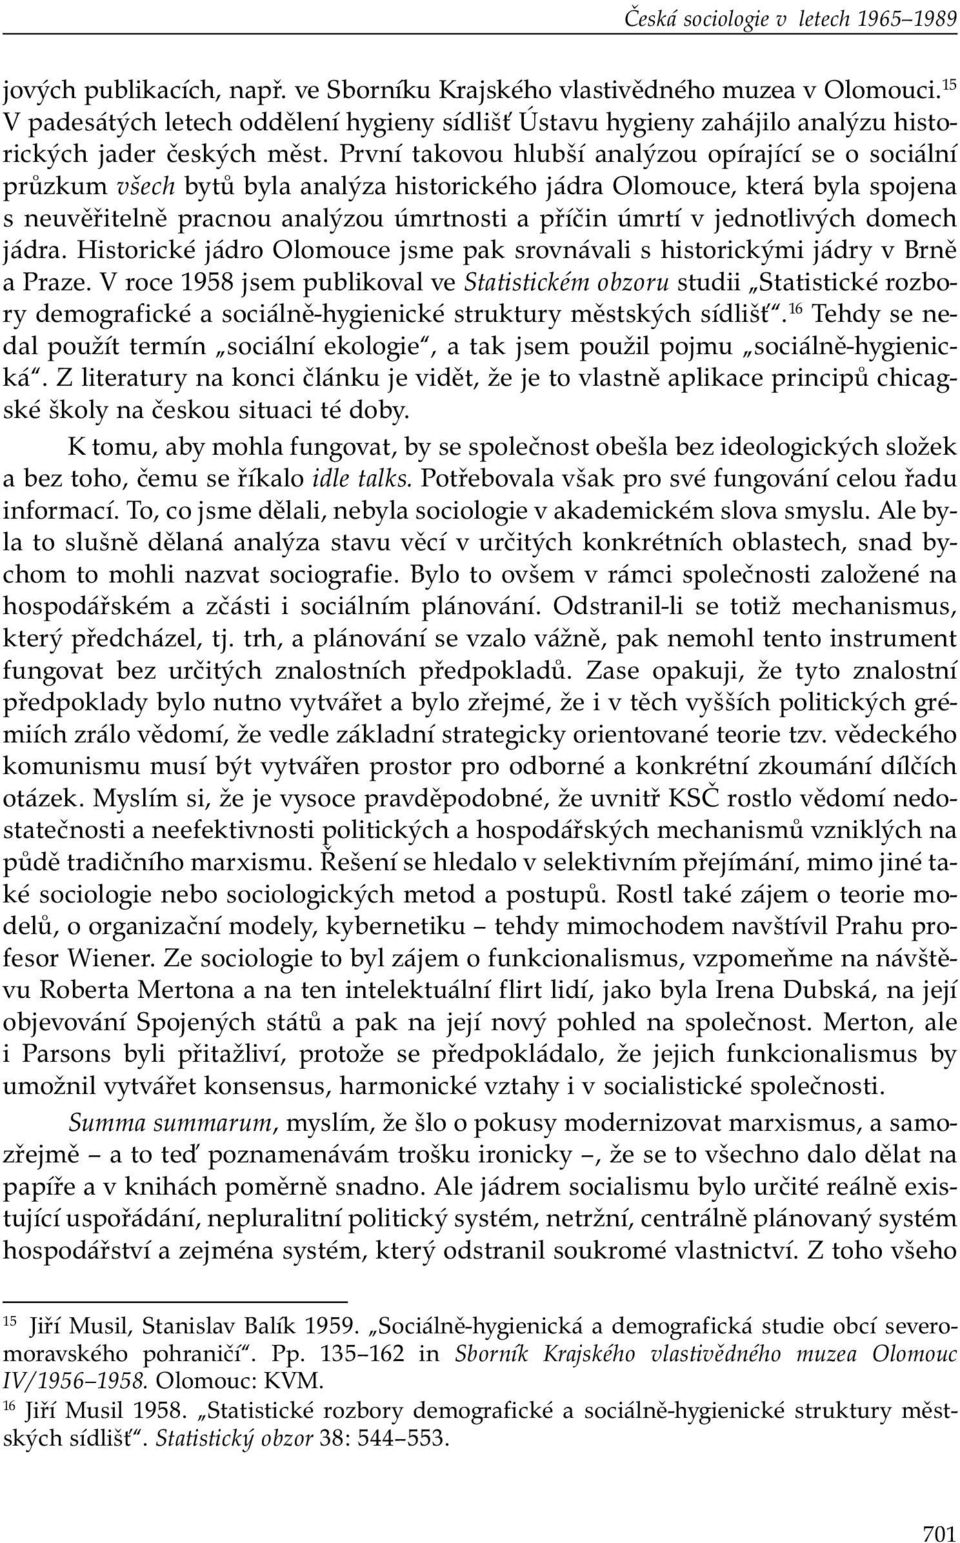 První takovou hlubší analýzou opírající se o sociální průzkum všech bytů byla analýza historického jádra Olomouce, která byla spojena s neuvěřitelně pracnou analýzou úmrtnosti a příčin úmrtí v